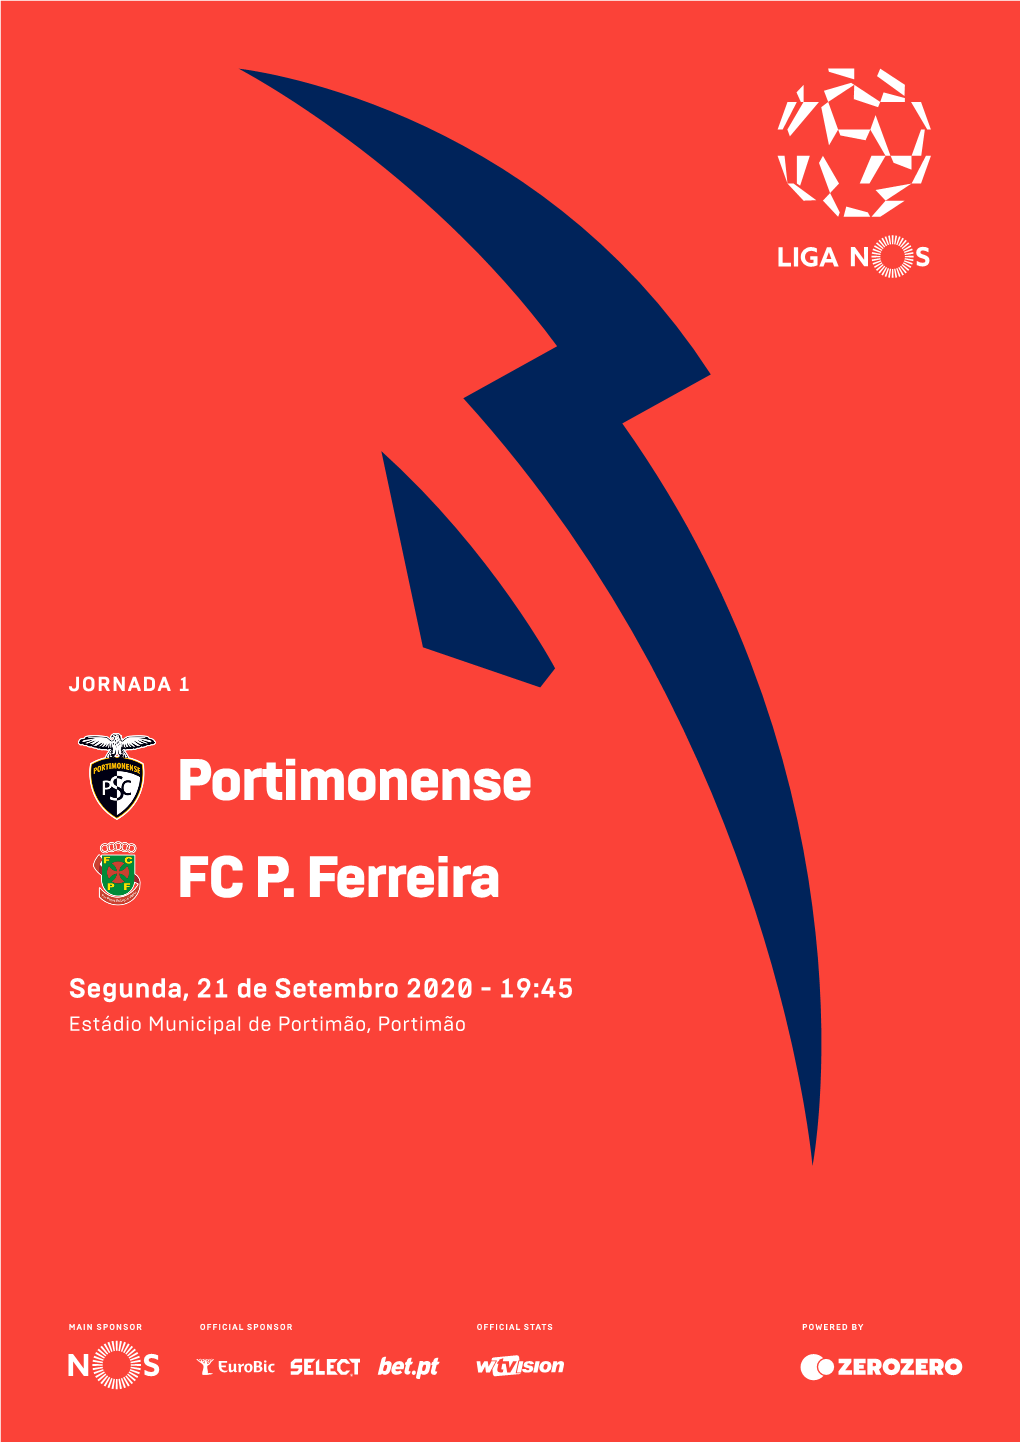 Portimonense FC P. Ferreira